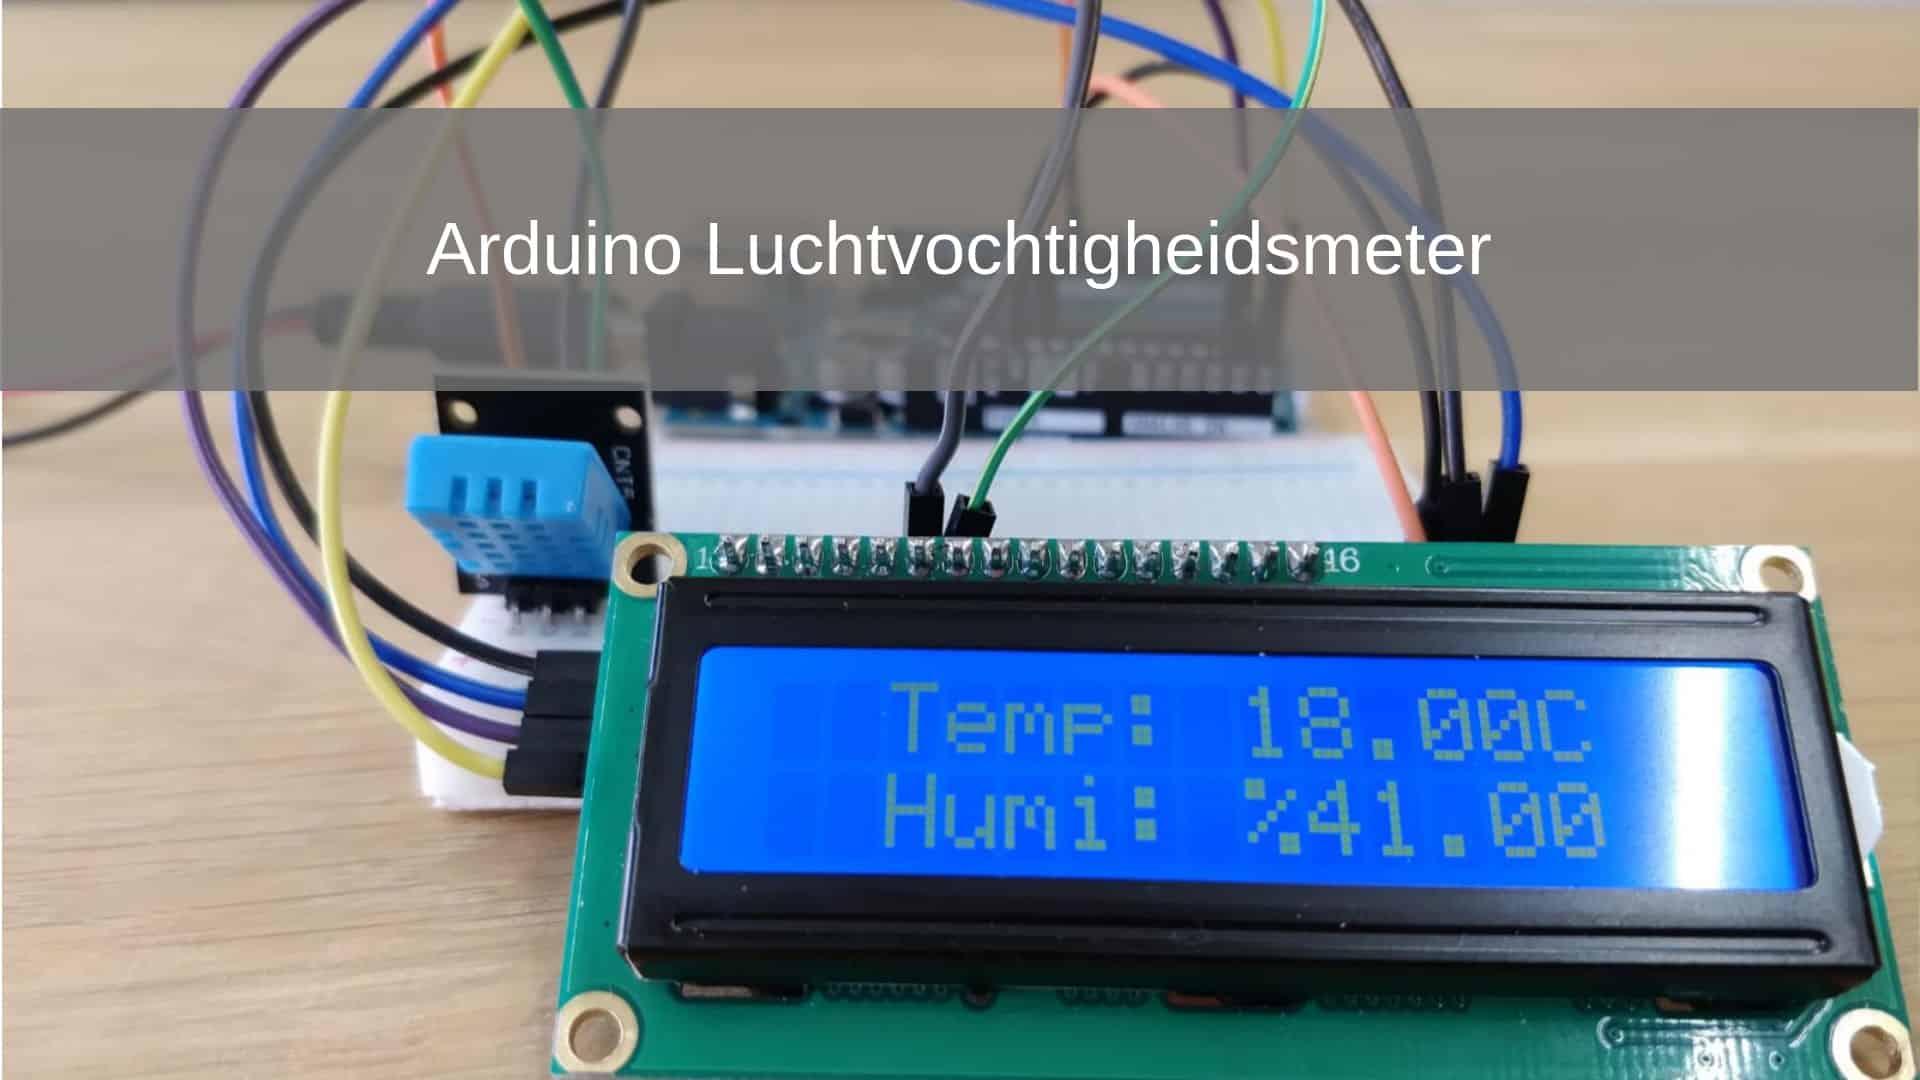 Afficher du texte sur un écran LCD 16x2 avec Arduino